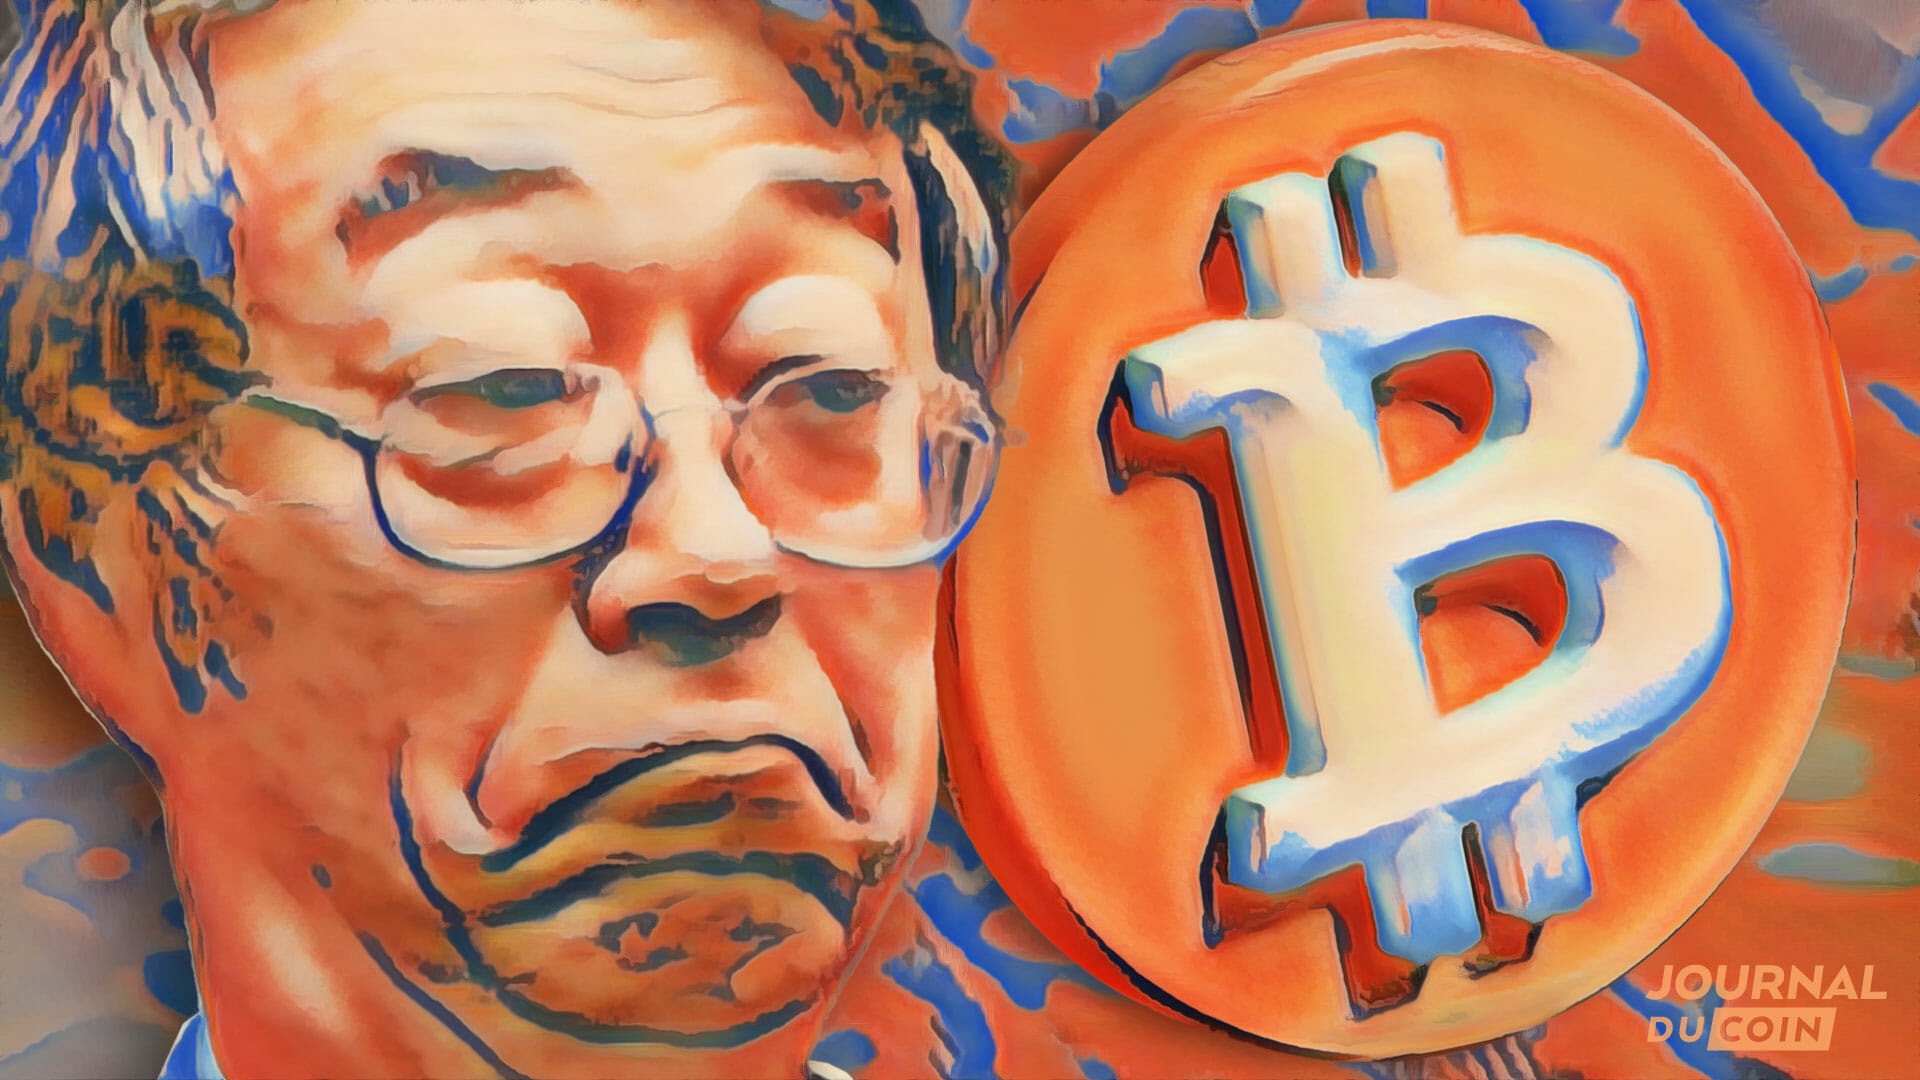 SatoshiNakamoto_Bitcoin_BTC_Histoire